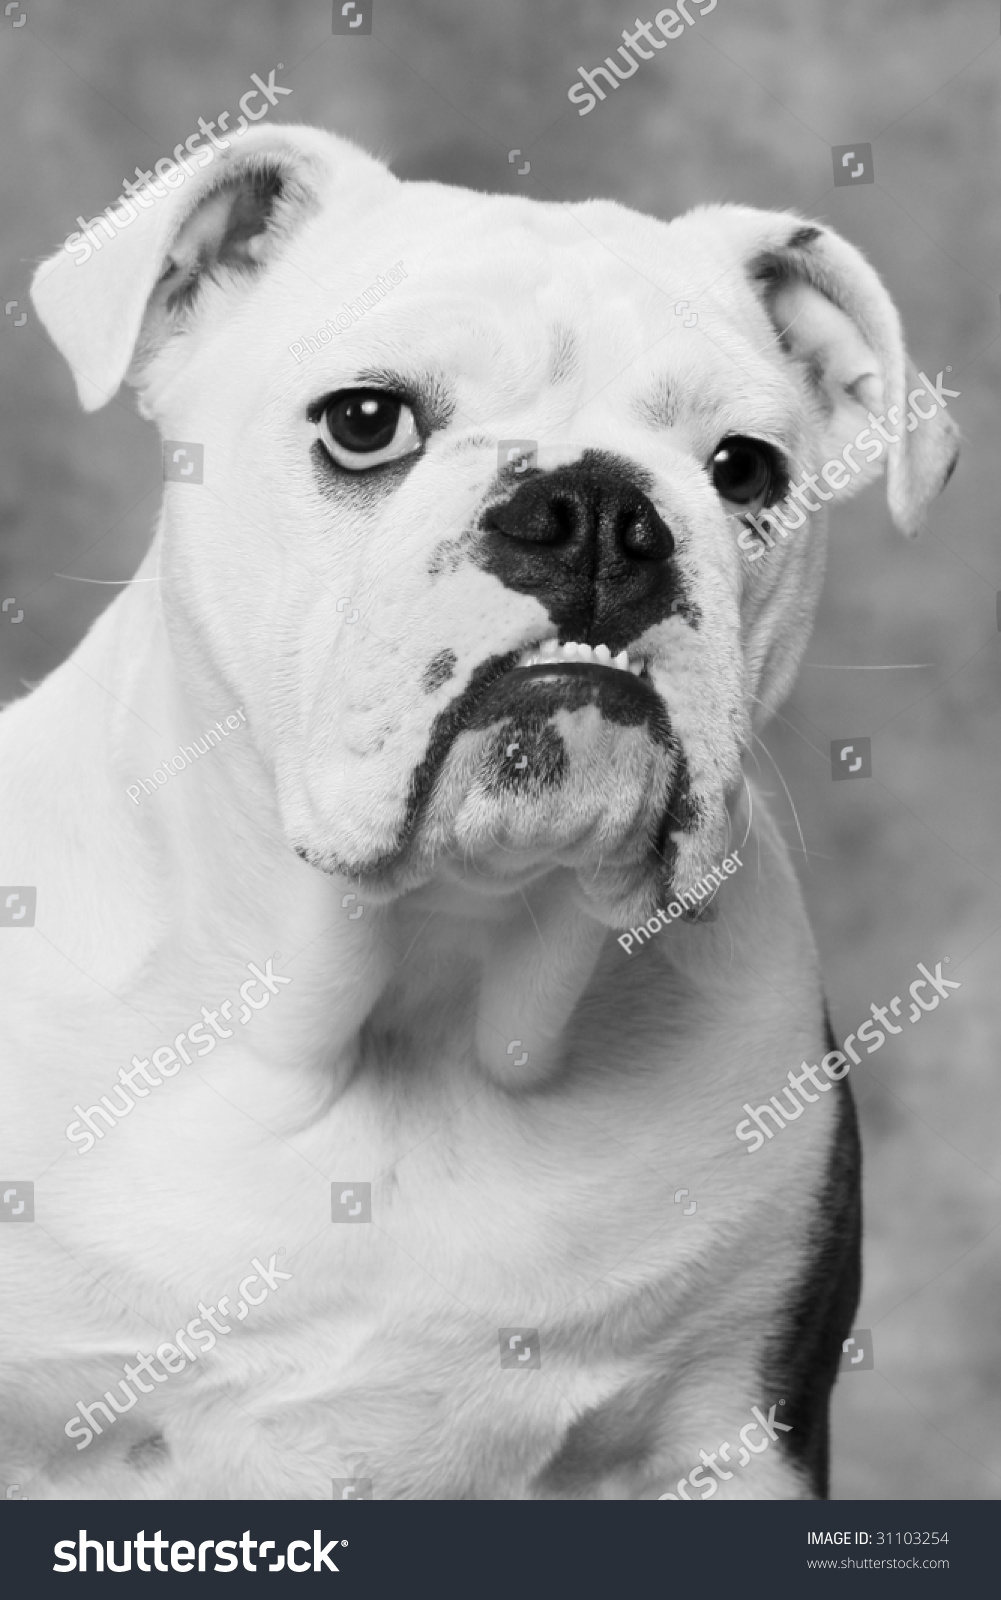 English Bulldog Portrait Black White Stock Photo 31103254 - Shutterstock